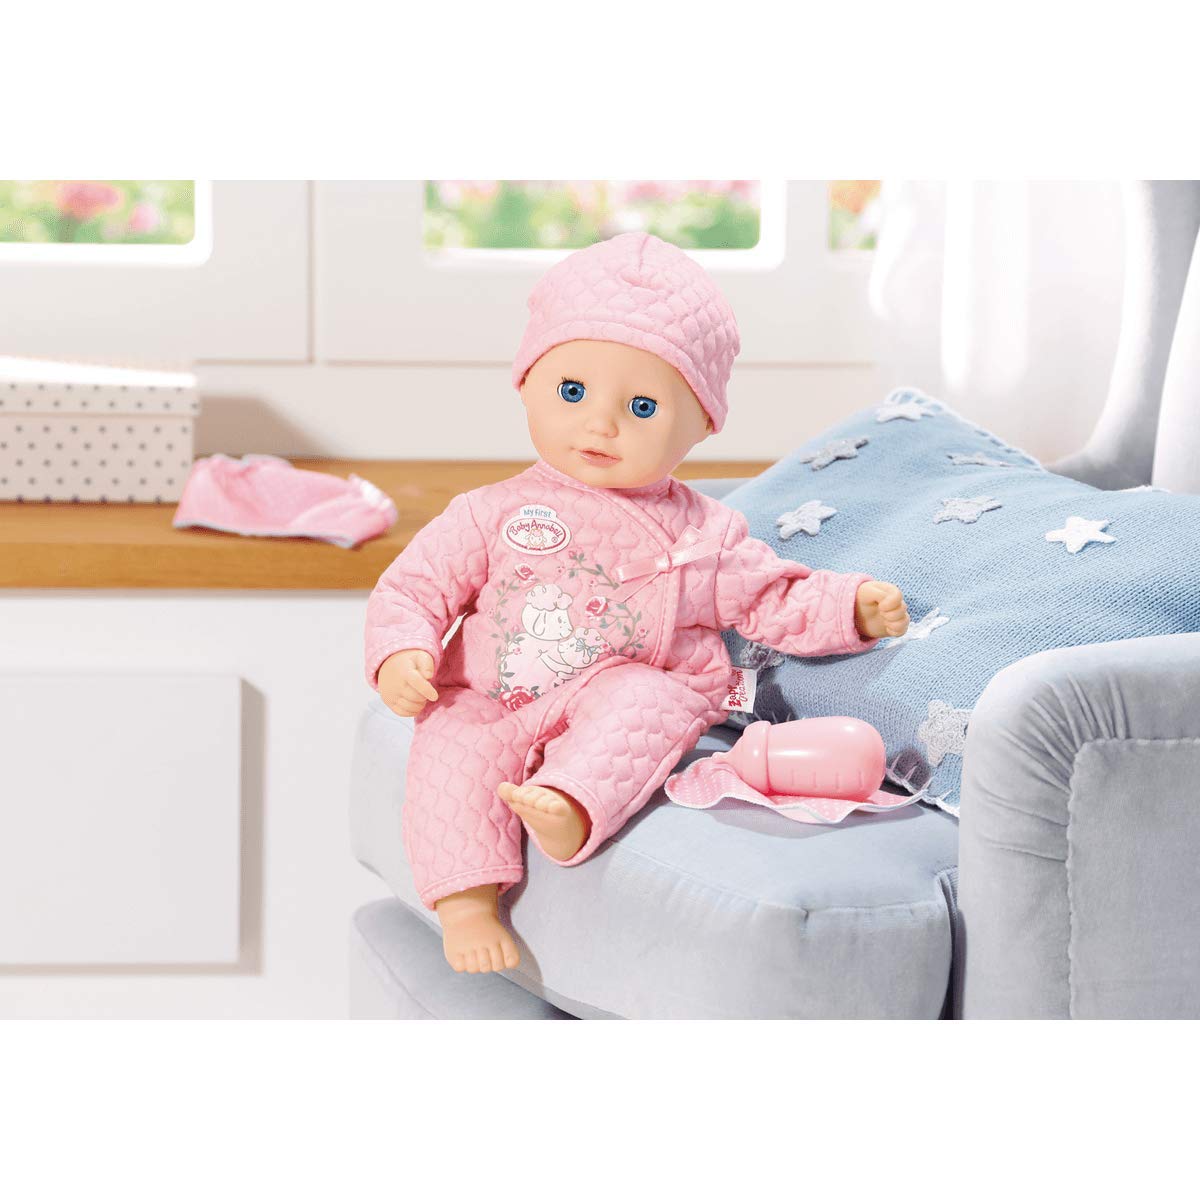 Baby Annabell 700594 My First Baby Fun Nurturing Doll 36cm Toptoy